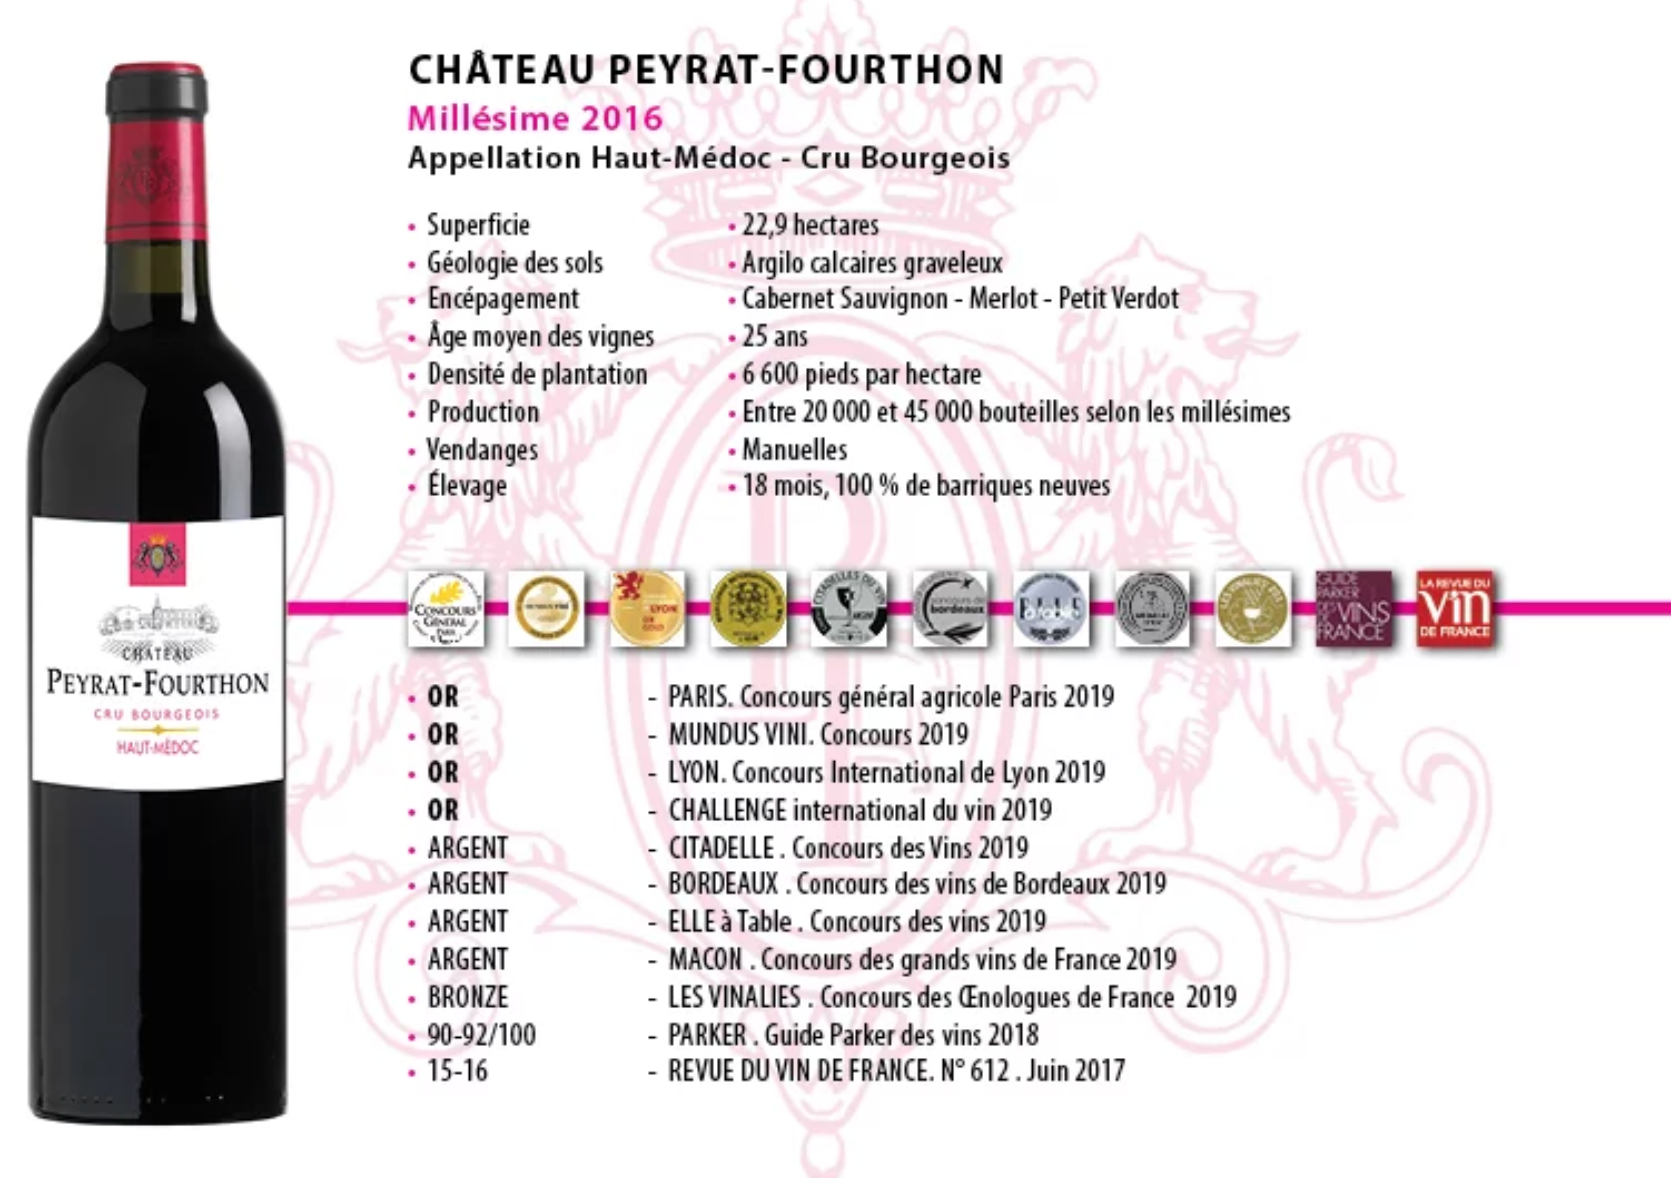 2016 Chateau Peyrat-Fourthon www.luxfood-shop.fr